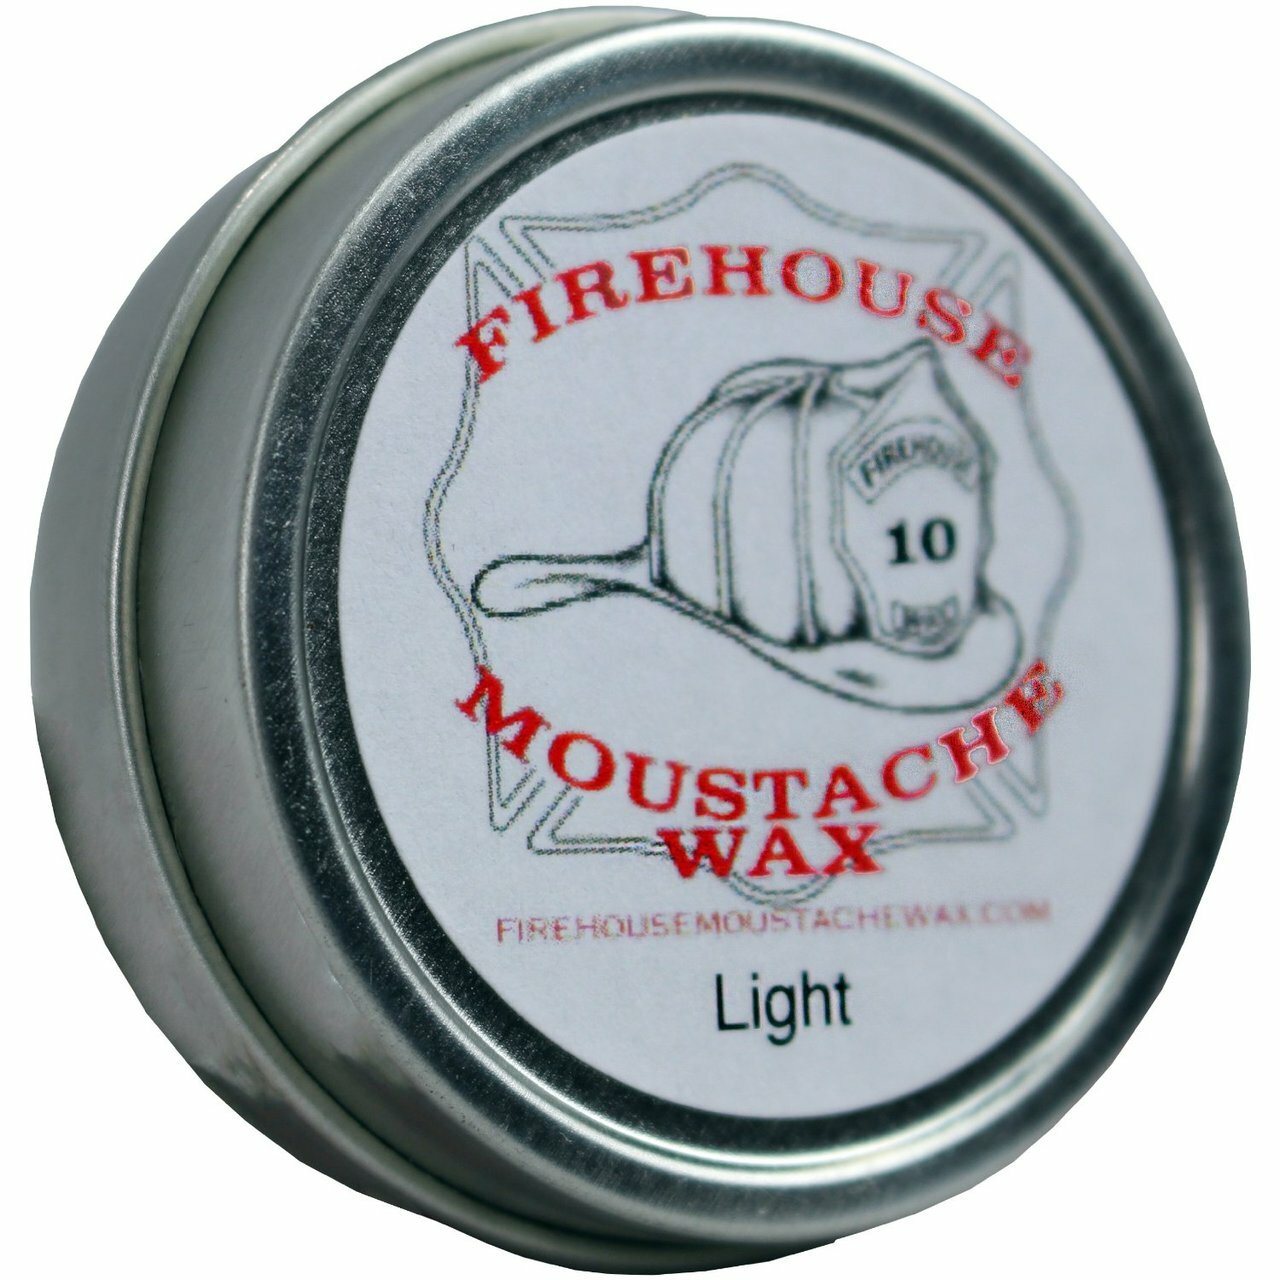 Firehouse-Moustache Light Wax